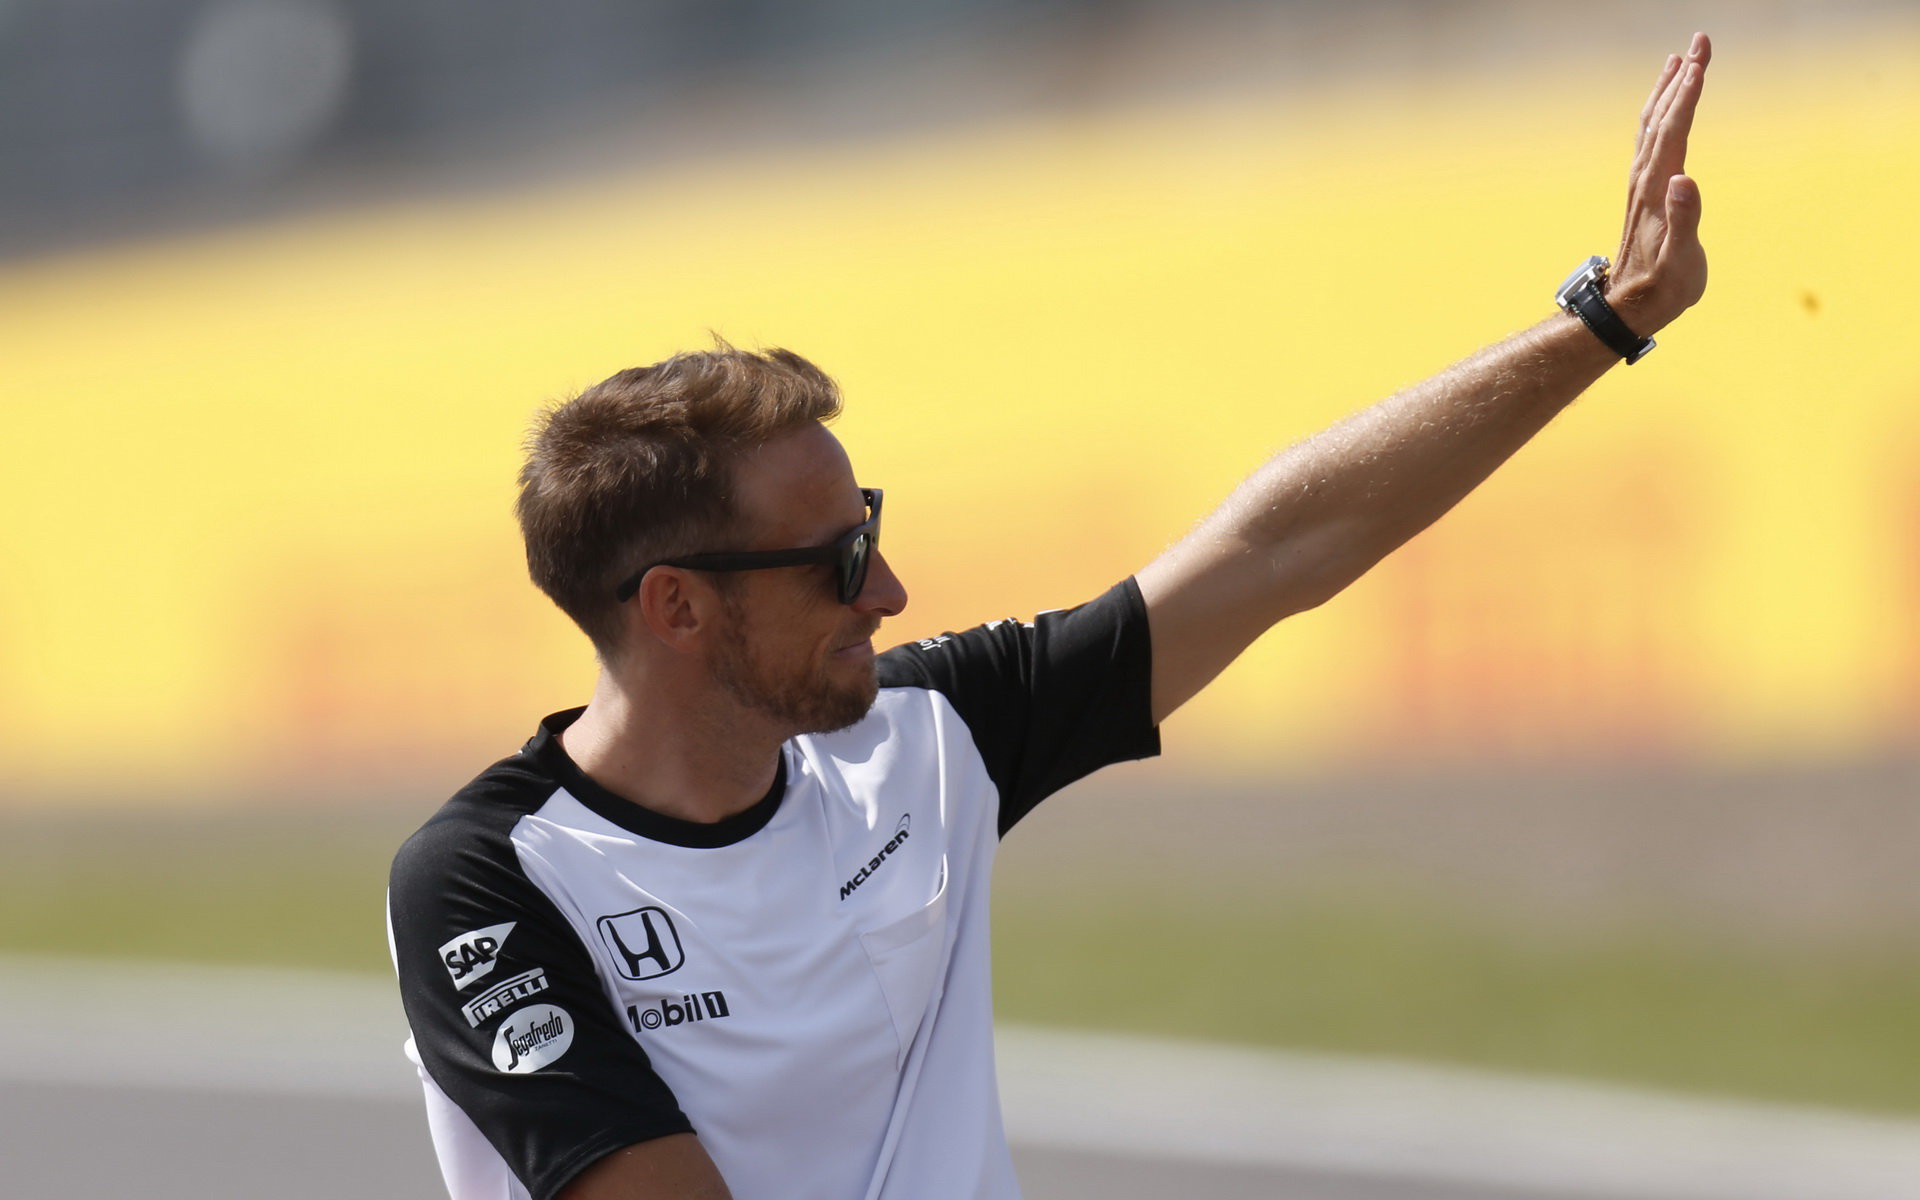 Jenson Button v Suzuce